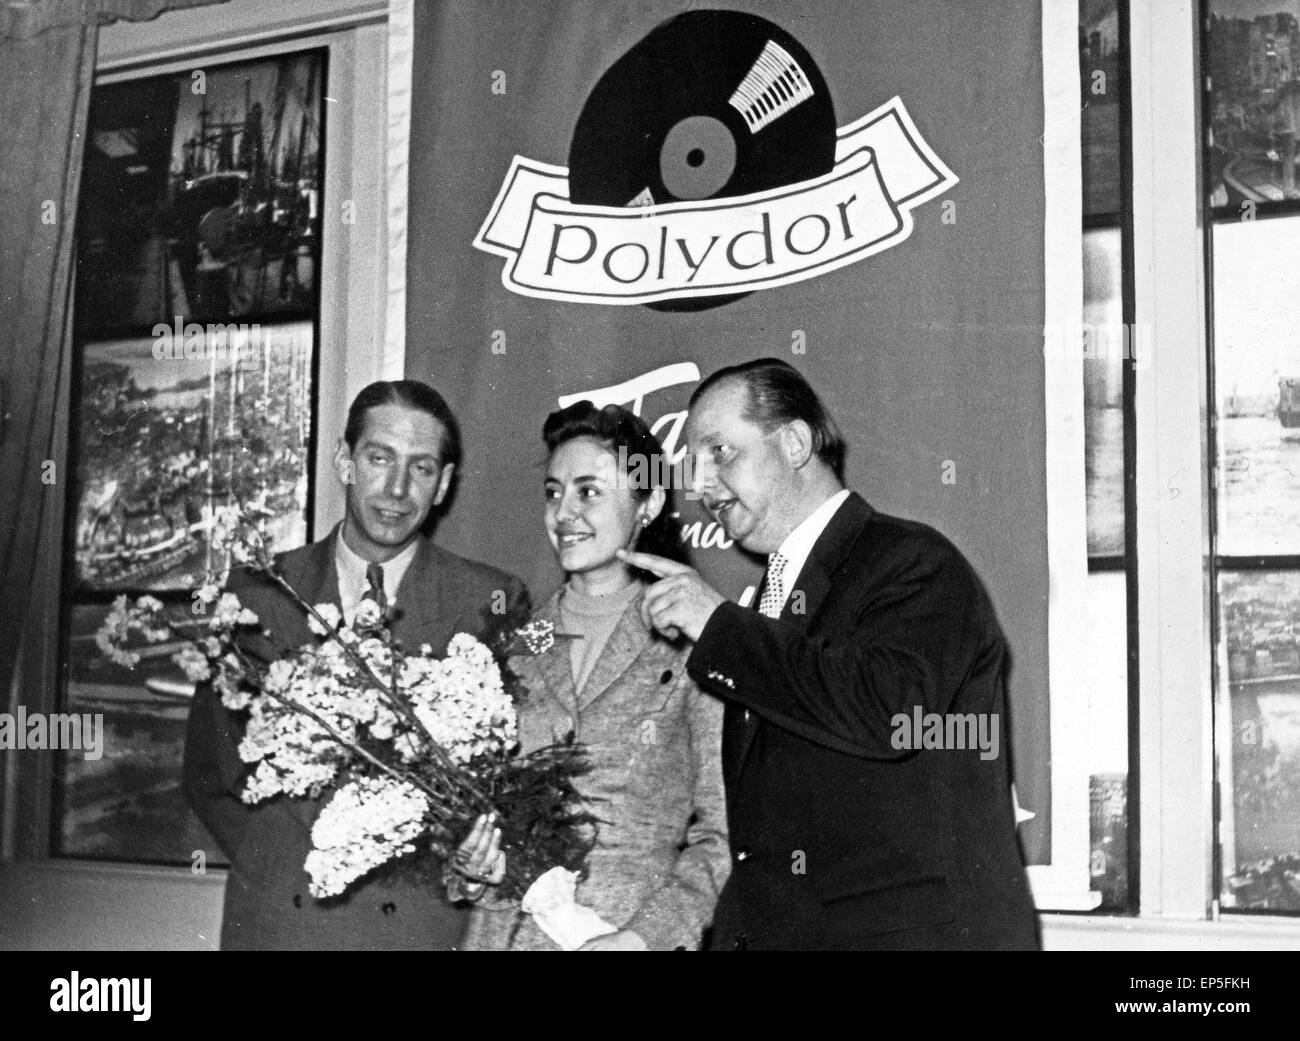 Italienische Sängerin, Tänzerin, Evenin und Schauspielerin Caterina Valente bei der Polydor ad Amburgo, Germania 1 Foto Stock